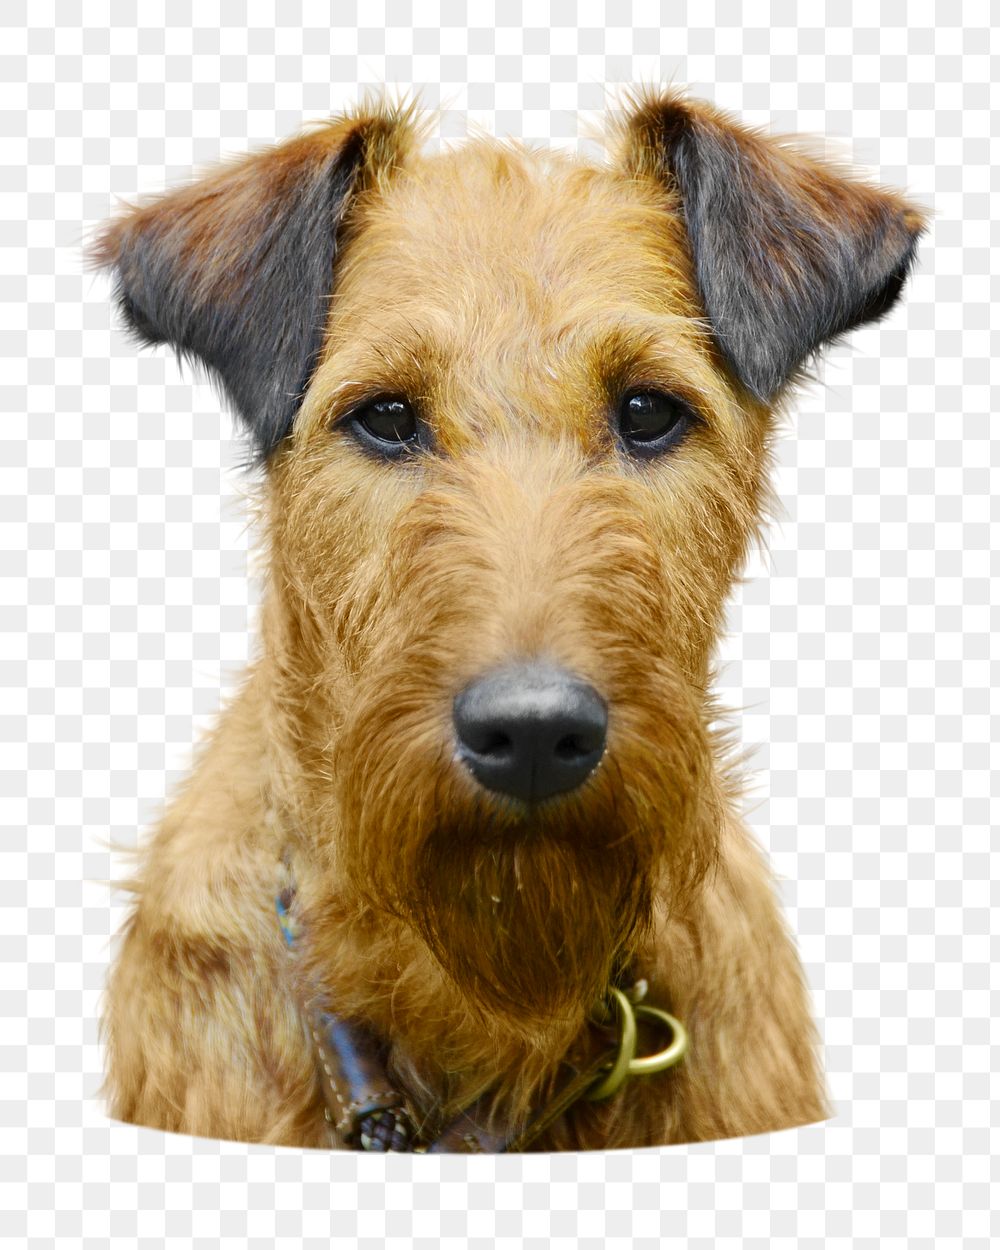 Png Irish terrier dog sticker, transparent background